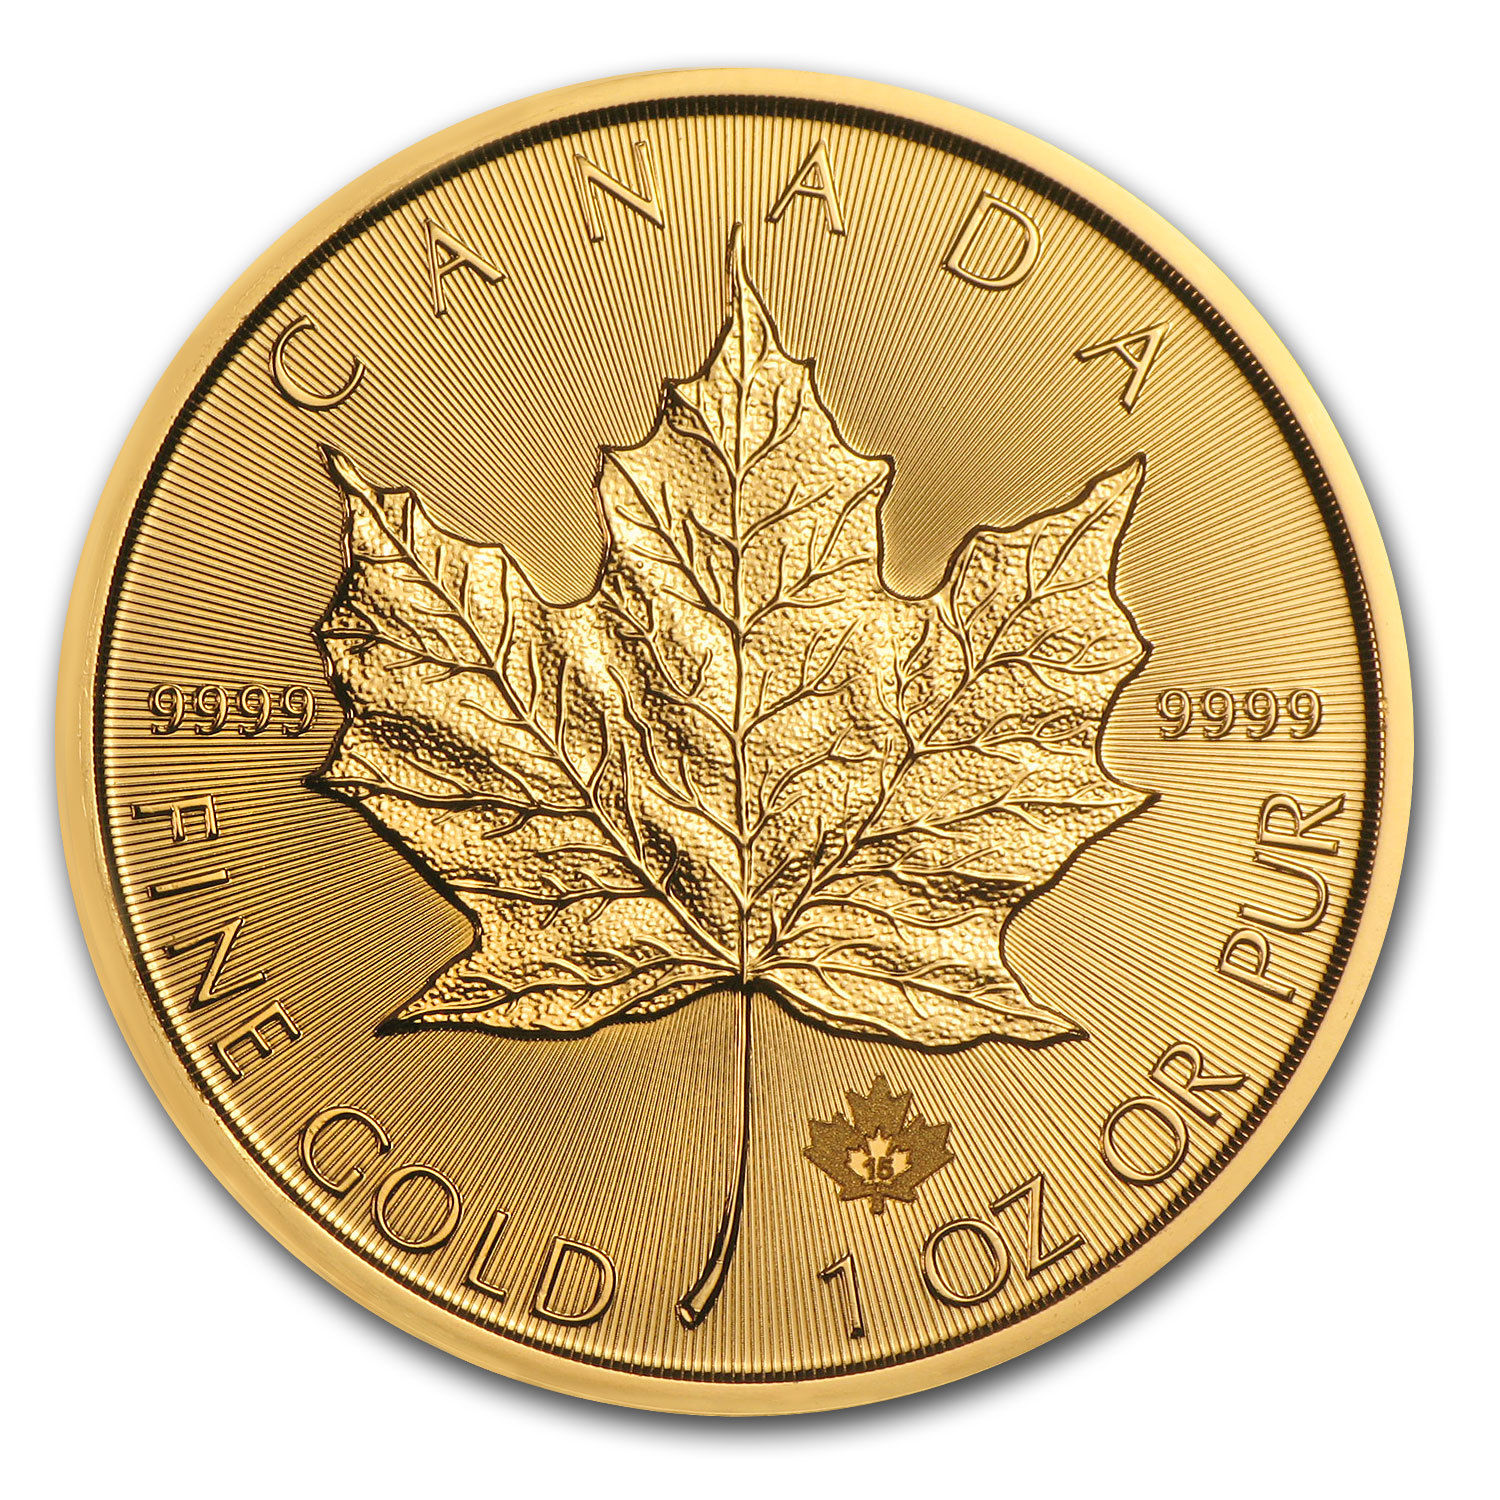 2015 Canada 1 oz Gold Maple Leaf BU - SKU #84889